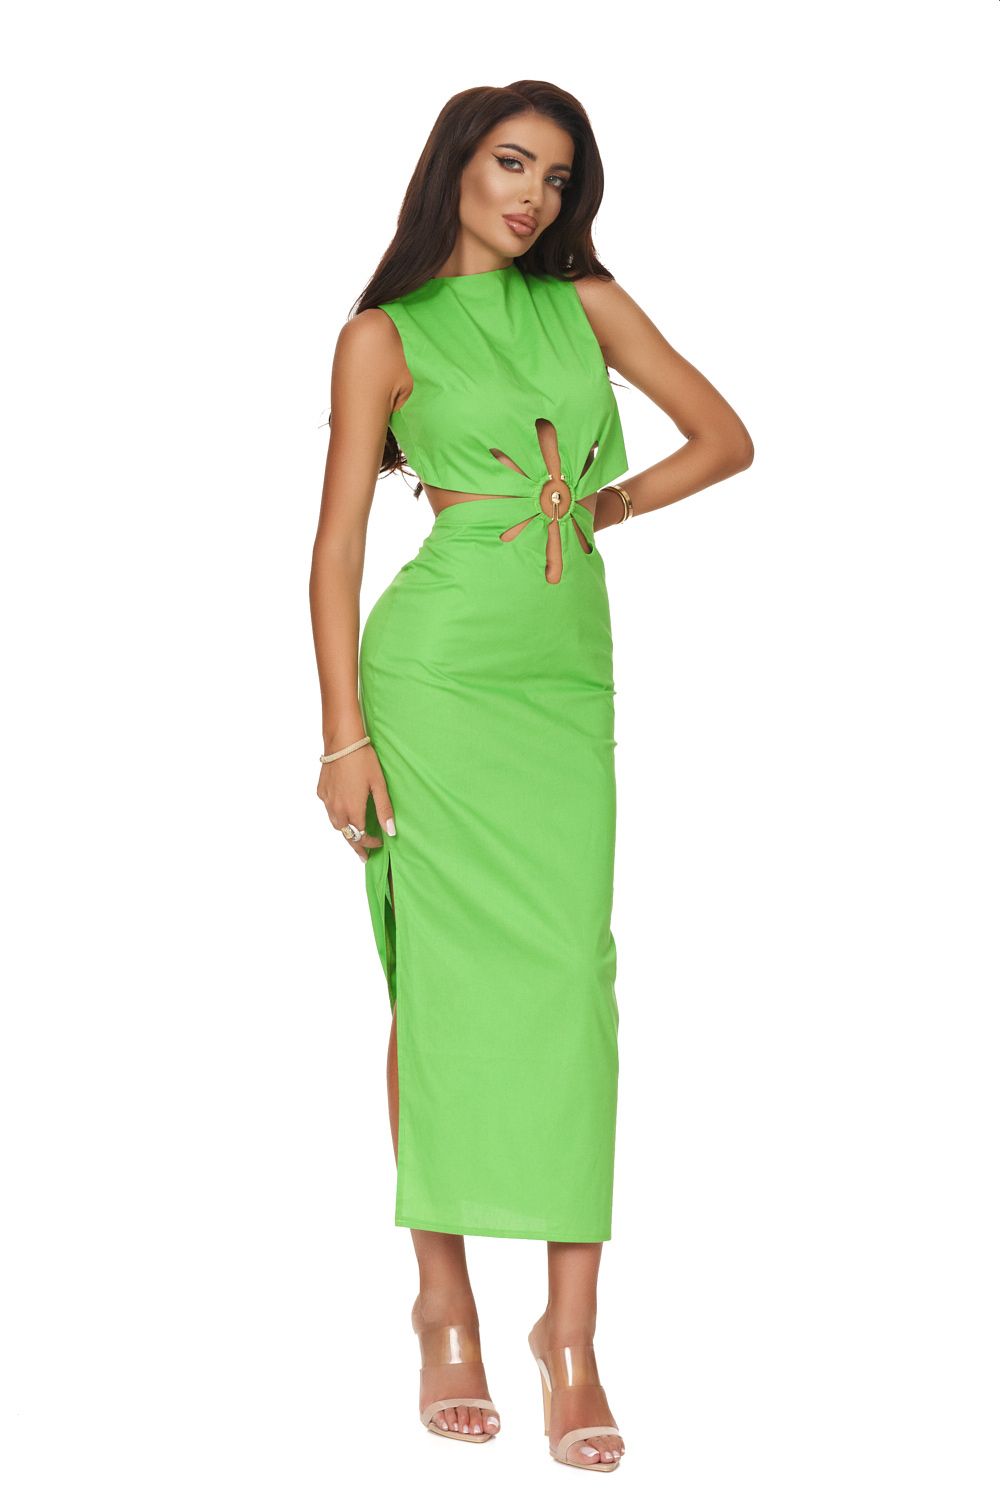 Long green dress for women Zalyza Bogas